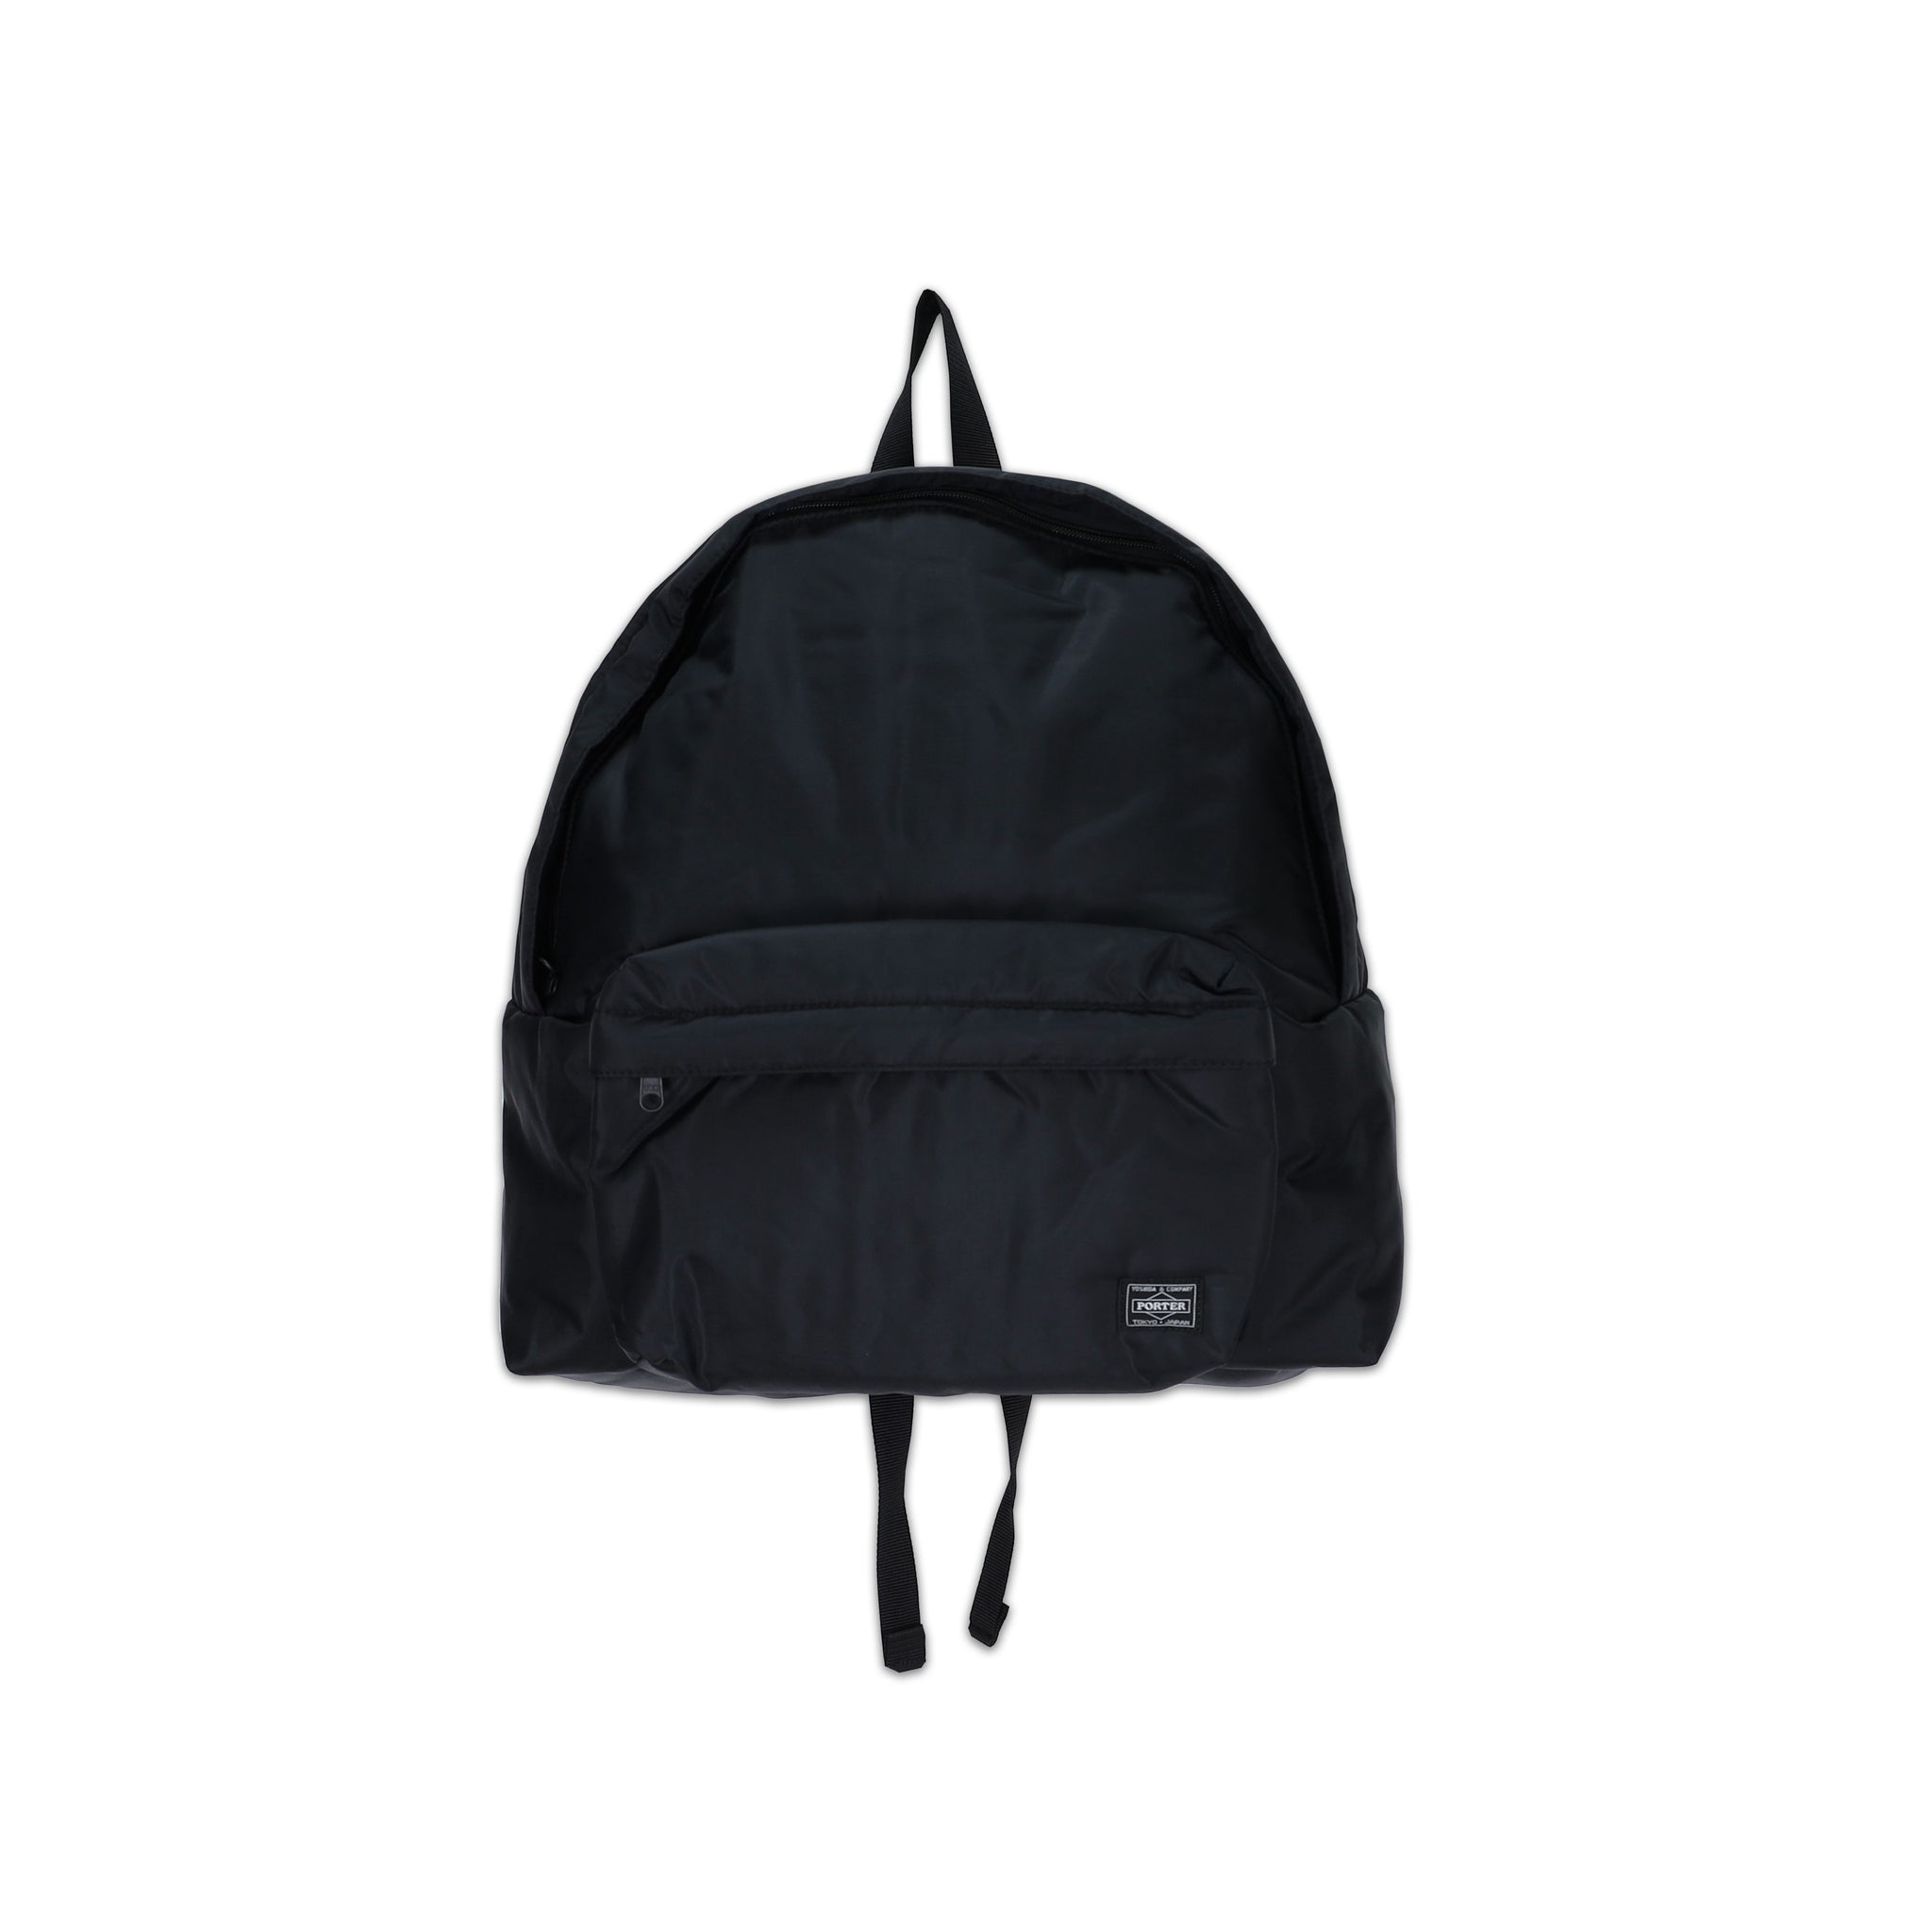 Porter Nylon Backpack Small